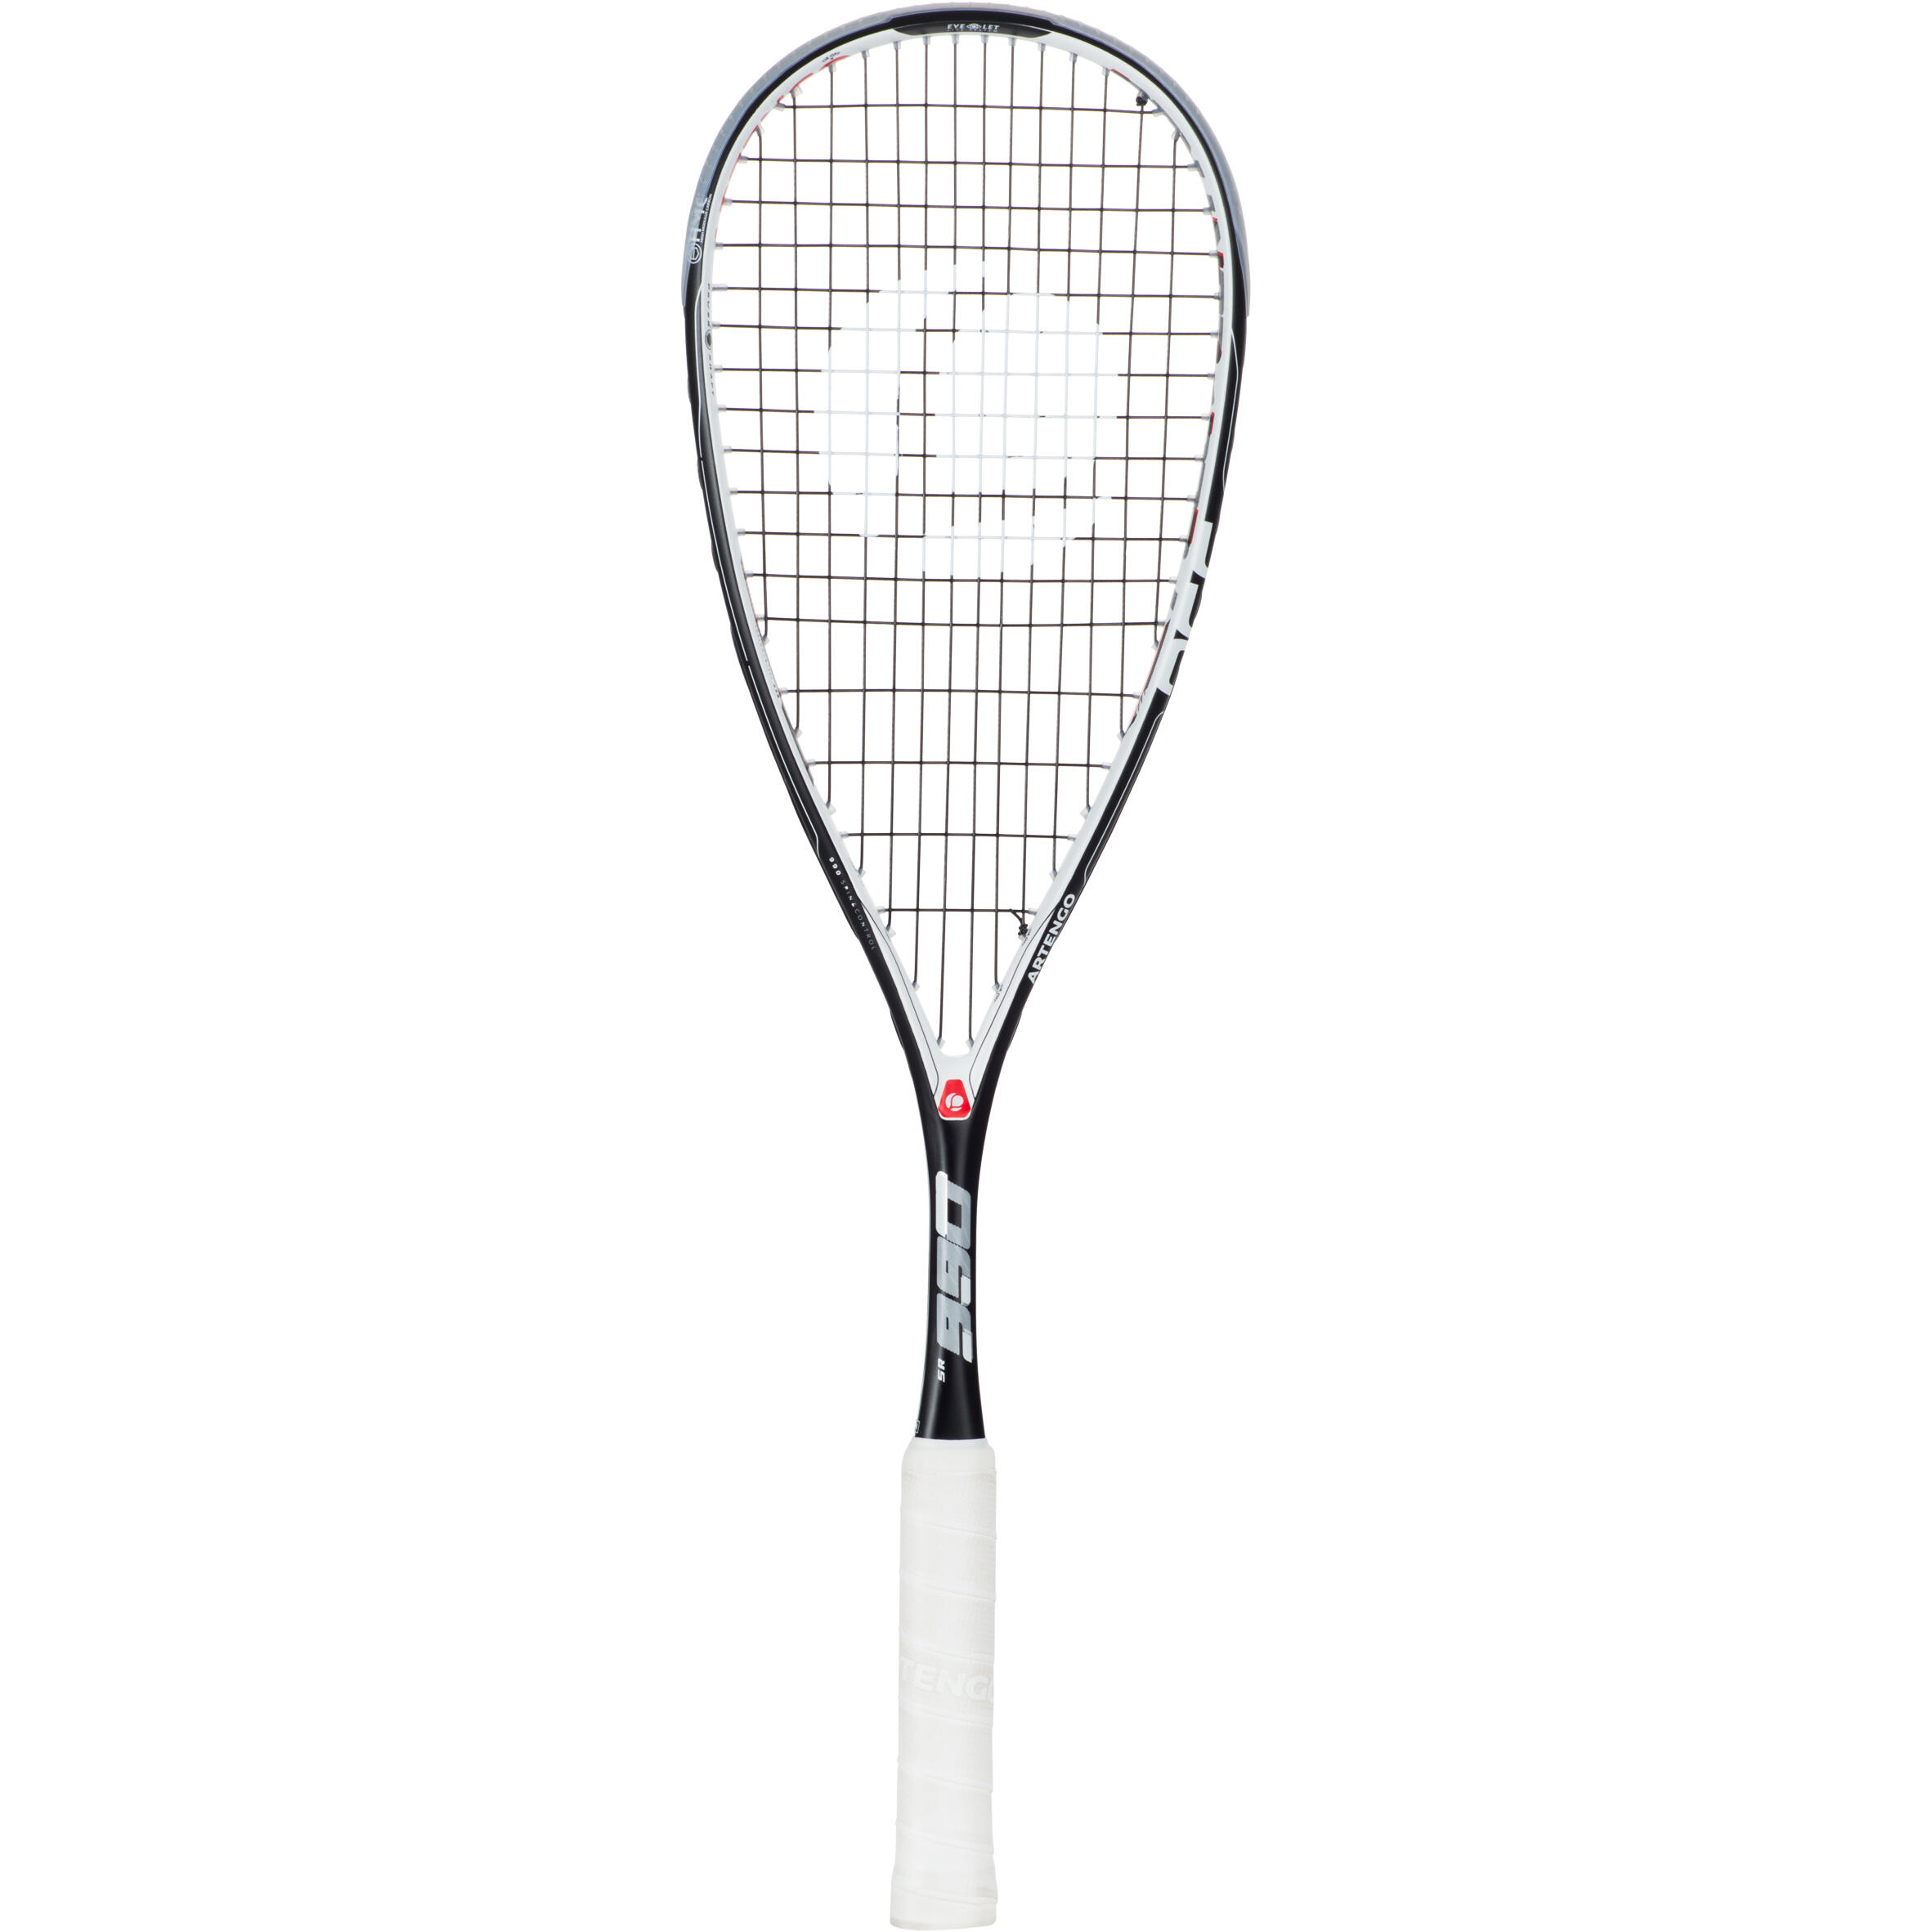 SR 990 Squash Racket